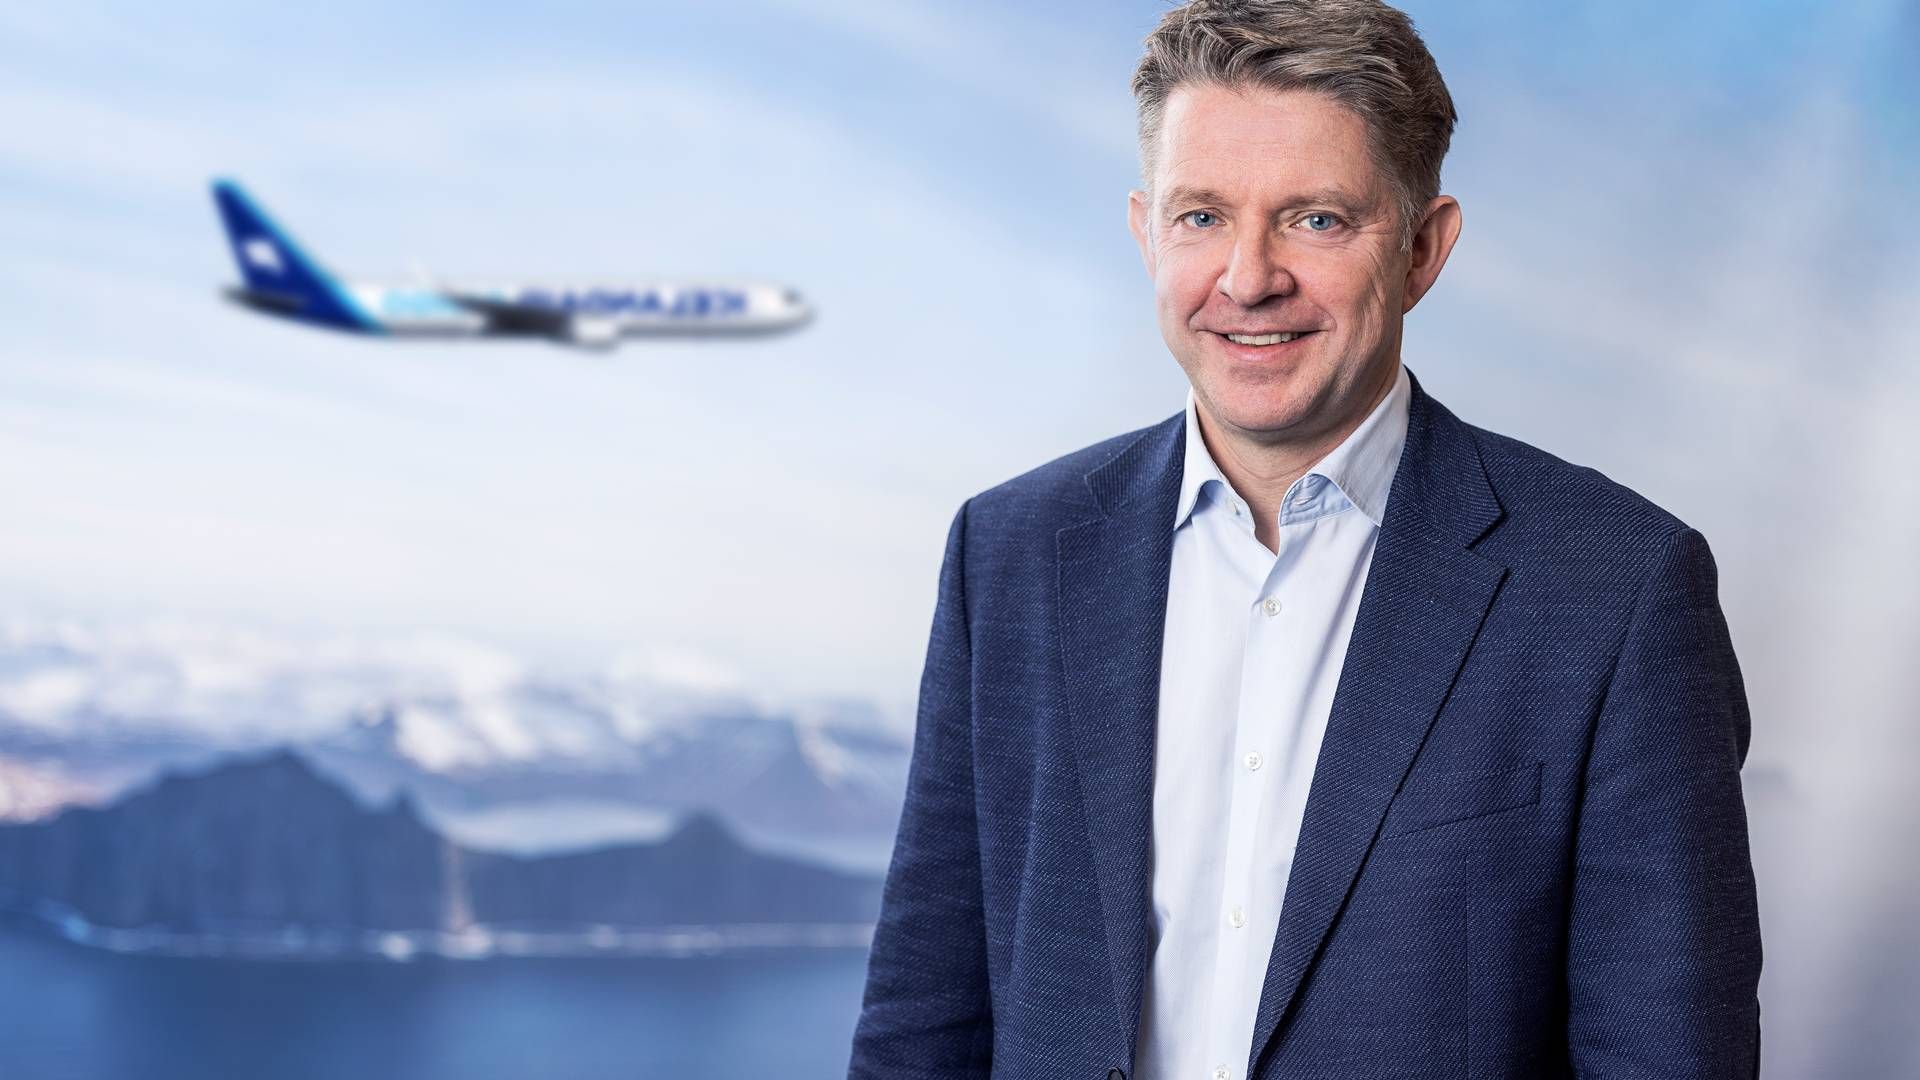 Bogi Nils Bogason er topchef for det islandske flyselskab Icelandair. | Foto: Pr / Icelandair